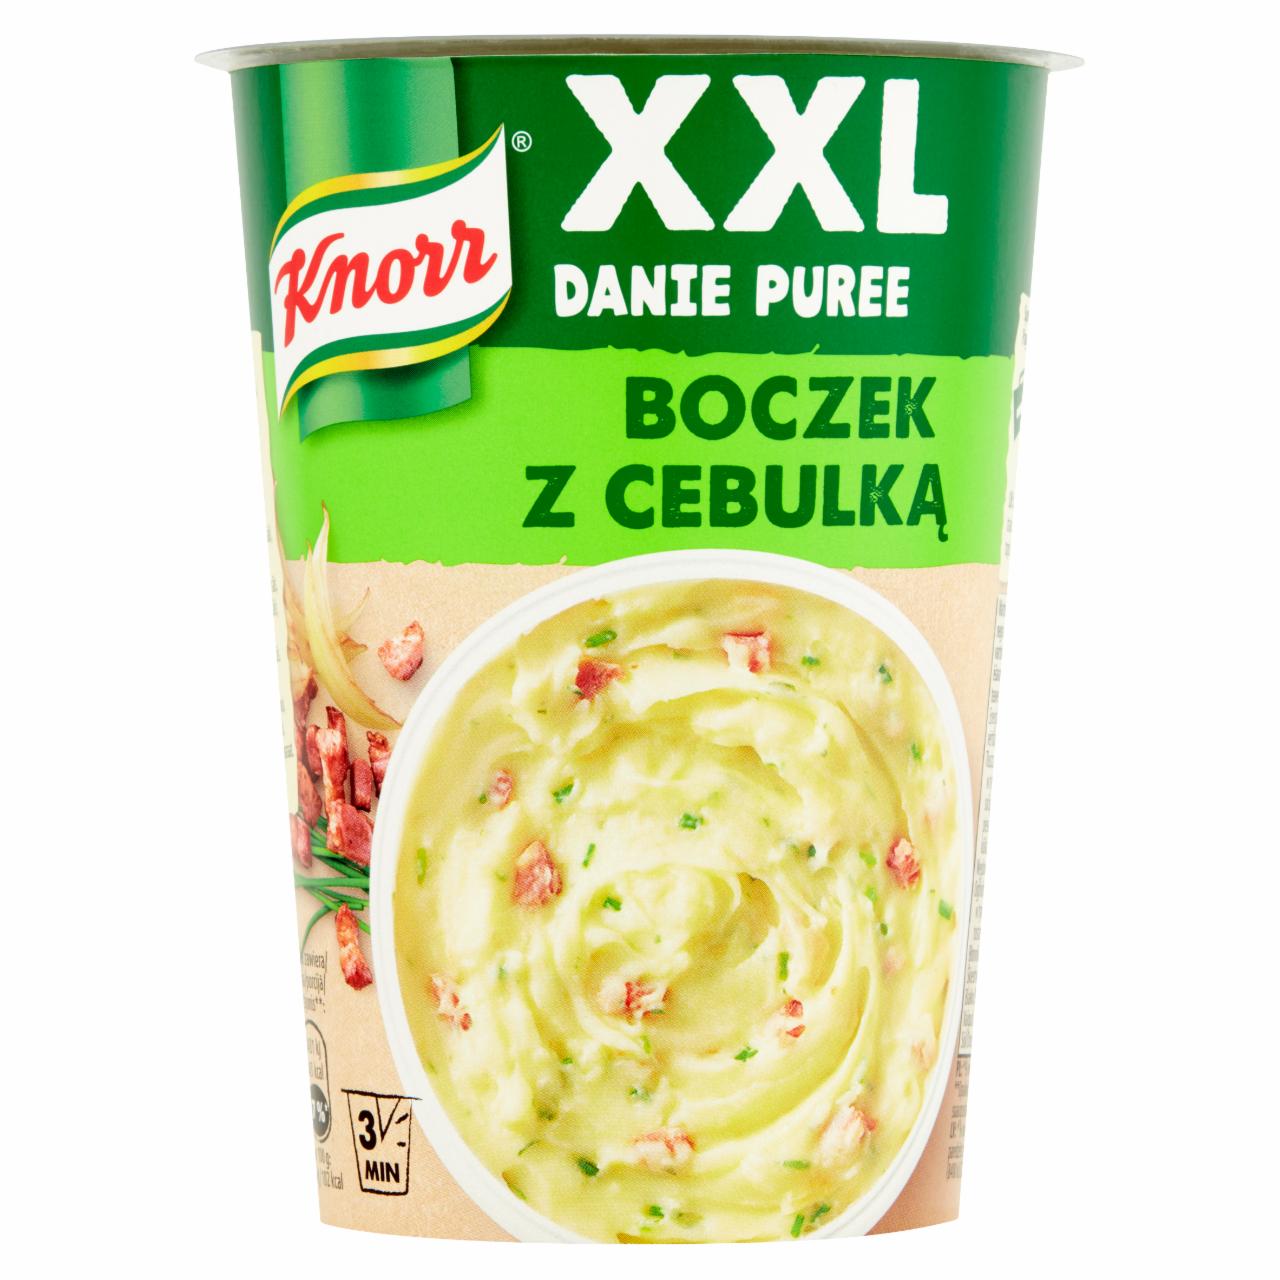 Zdjęcia - Knorr XXL Danie puree boczek z cebulką 76 g